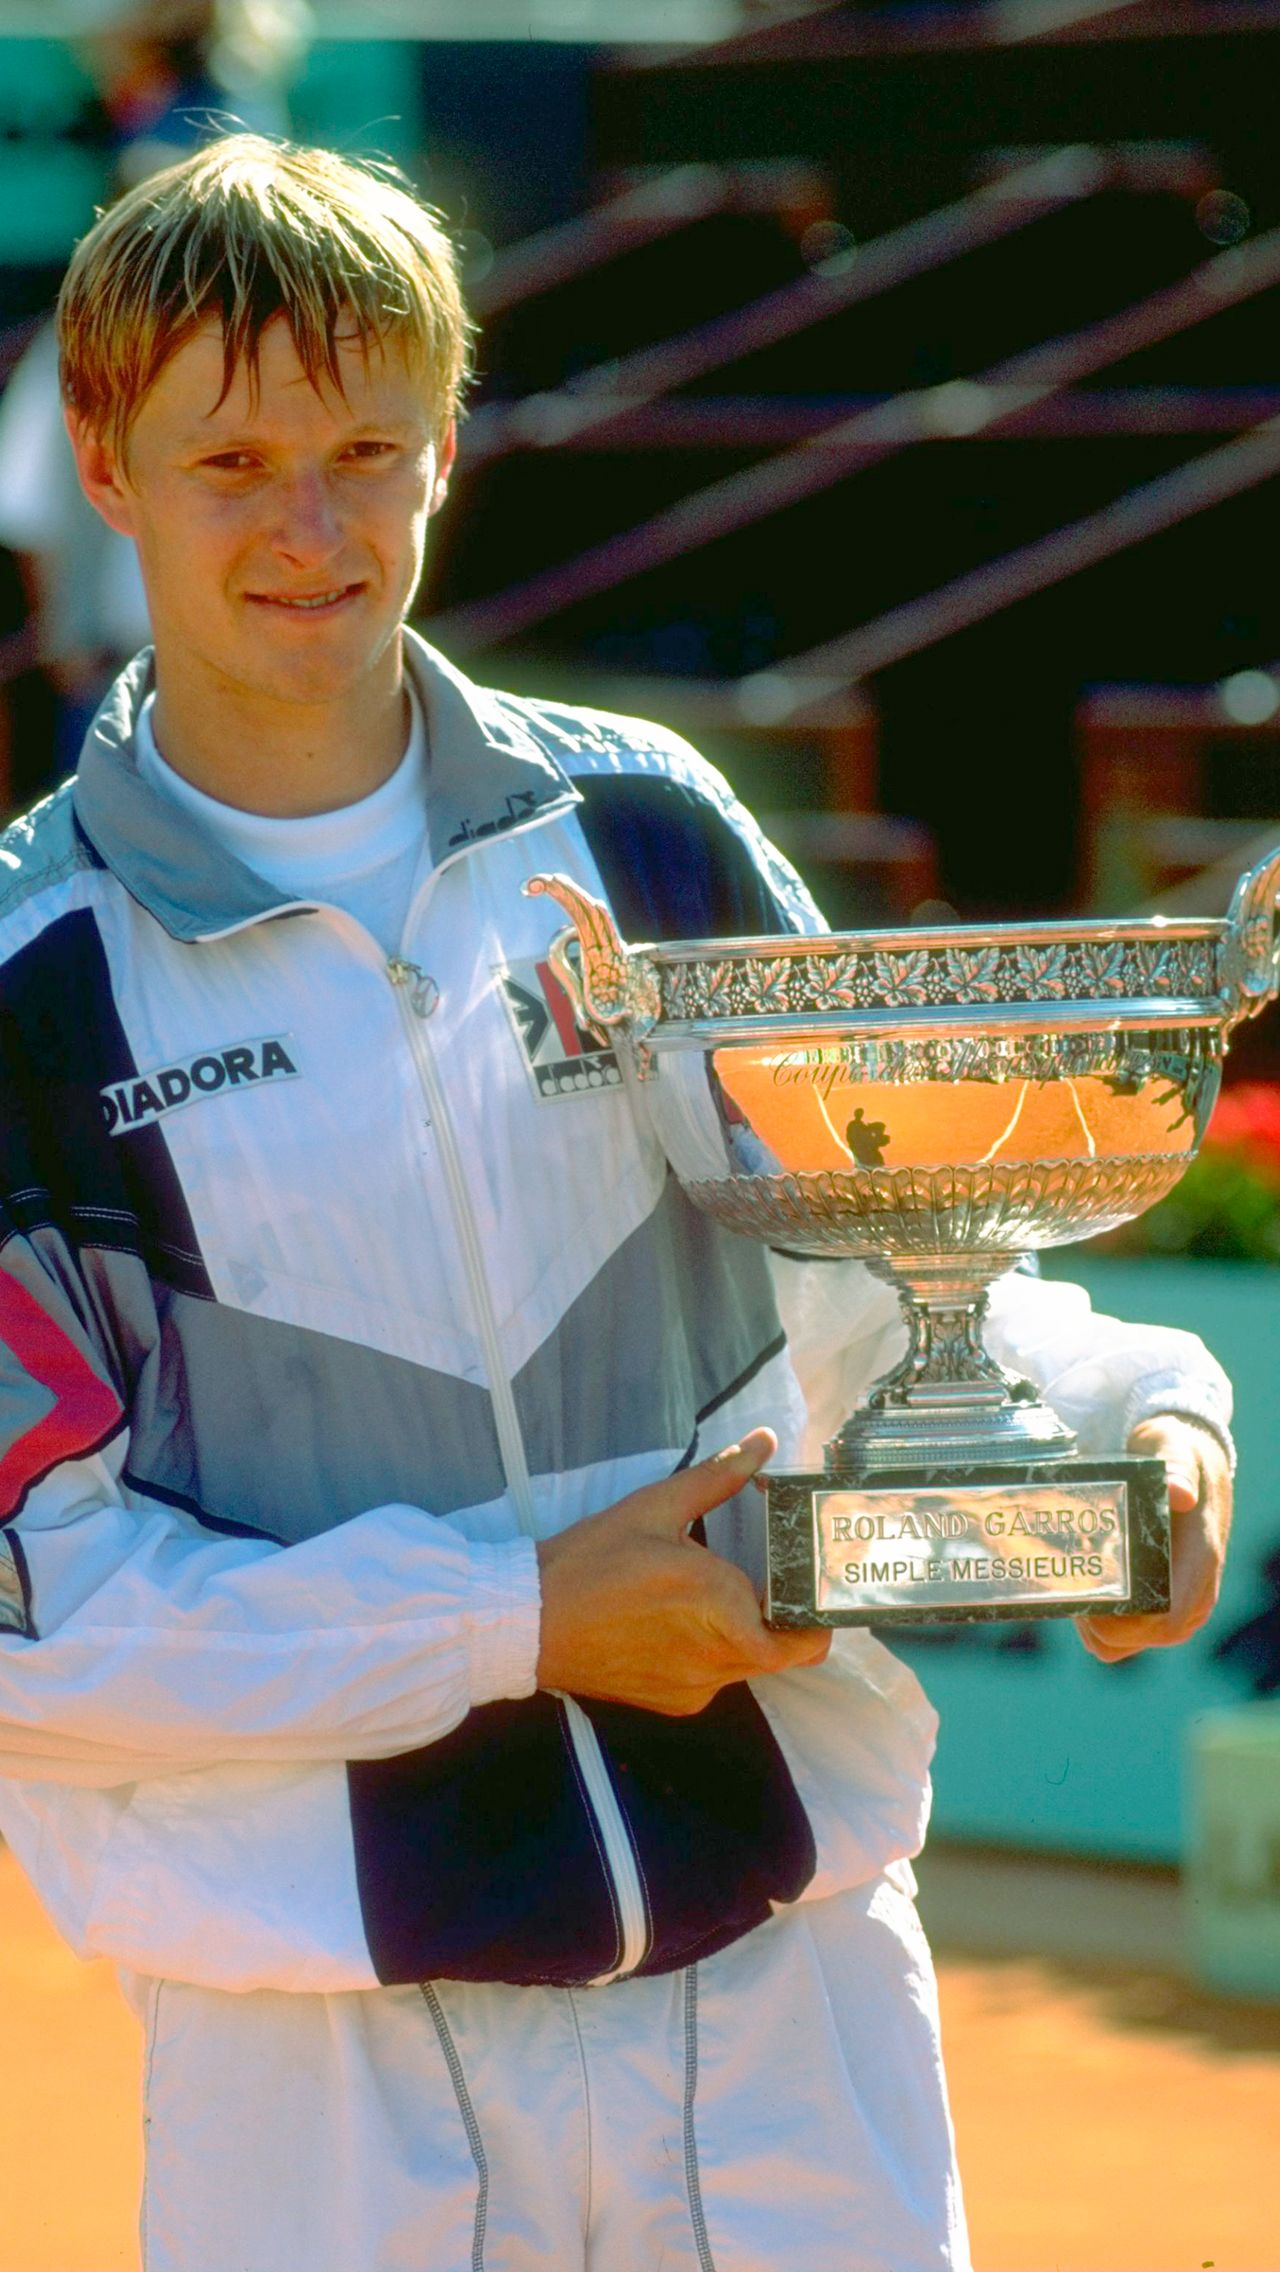 За карьеру Кафельников, двукратный чемпион ТБШ, взял 26 одиночных титулов ATP и шесть недель был первой ракеткой мира. Он ушёл из спорта в 2003 году.